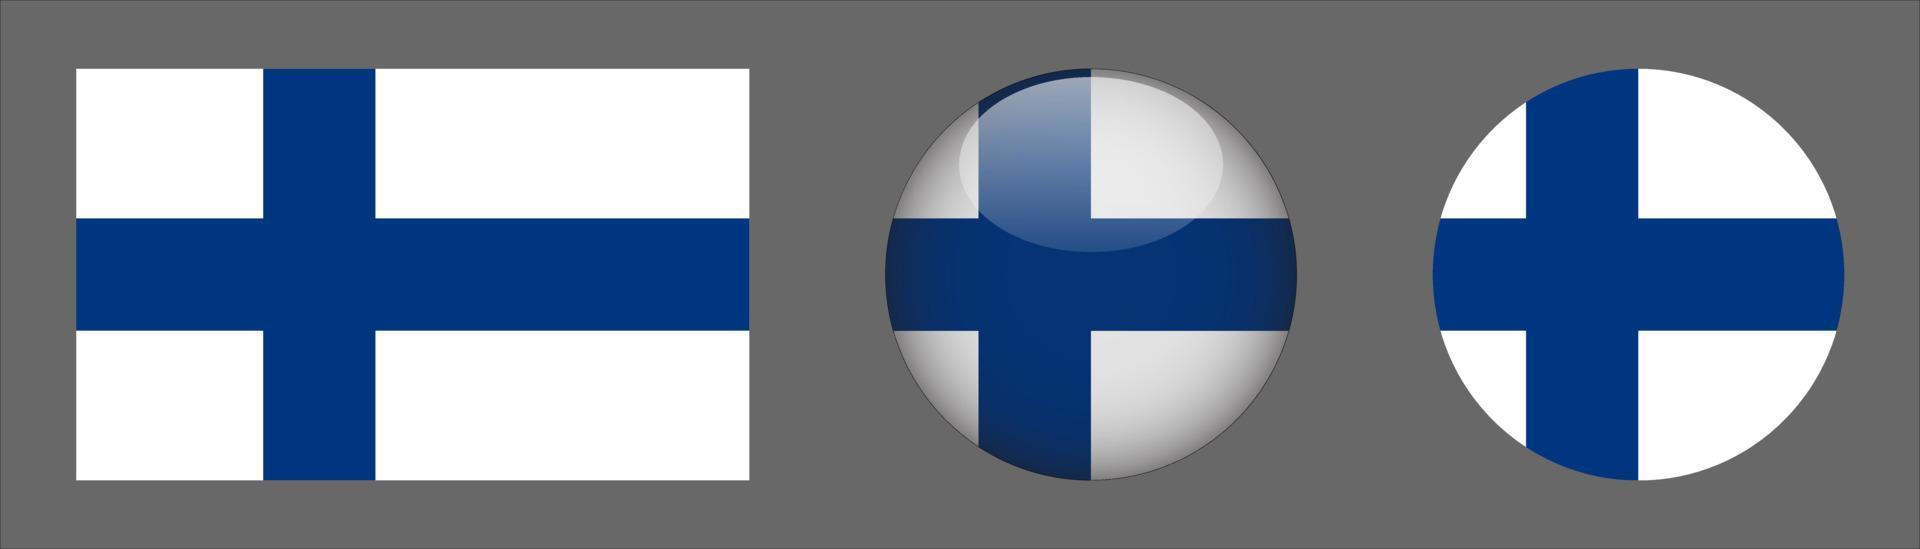 Colección de conjuntos de banderas de Finlandia, relación de tamaño original, redondeado en 3D y redondeado plano vector